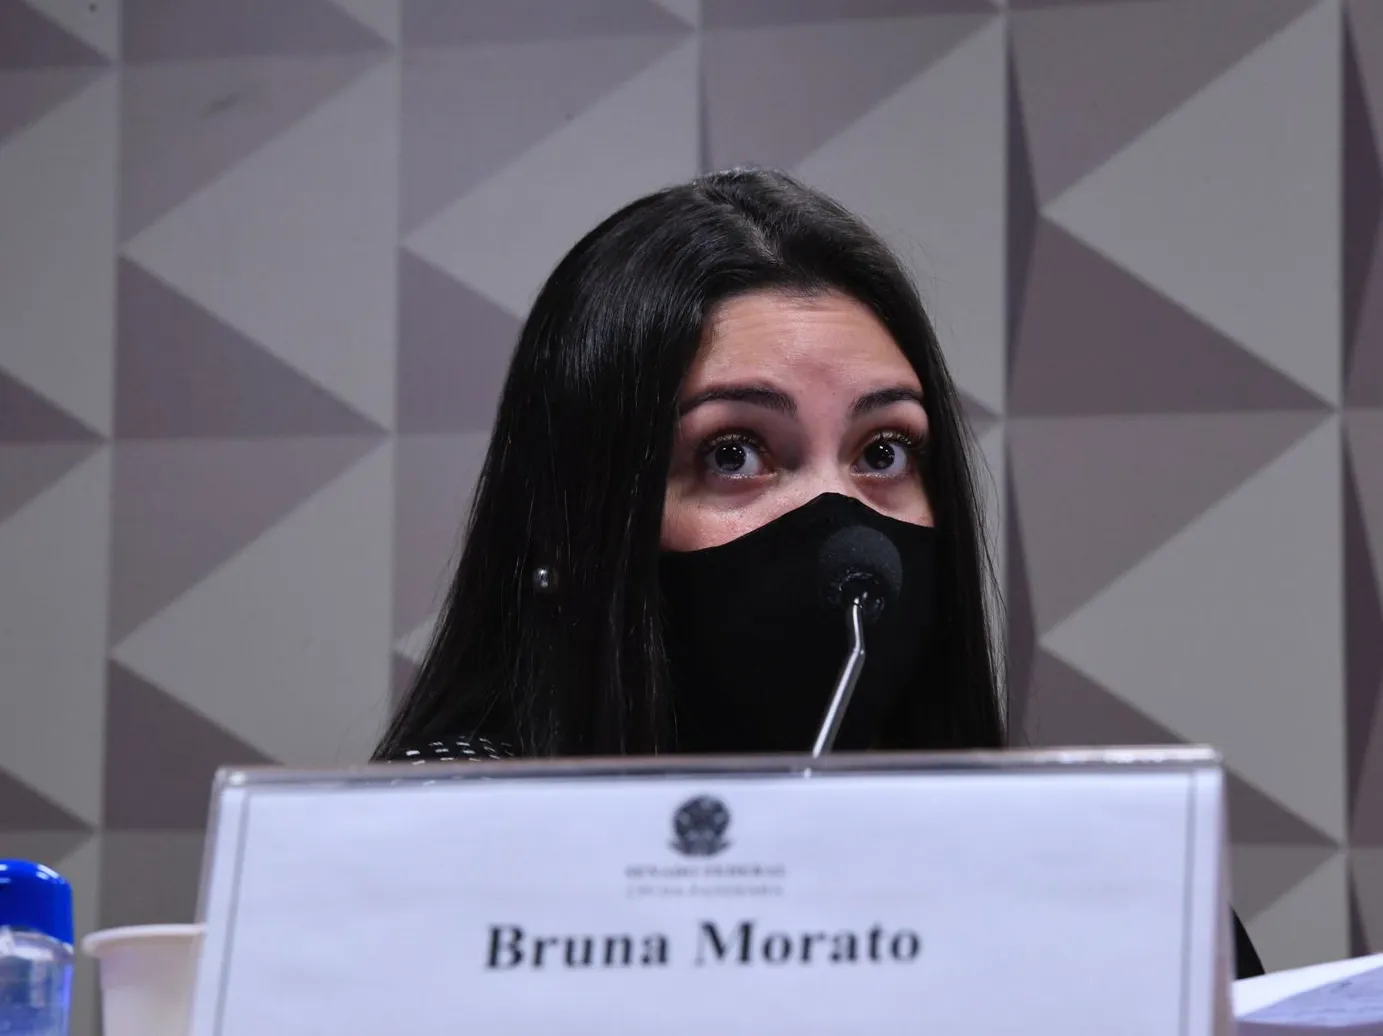 Bruna Mendes Morato diz que funcionários da operadora de saúde sofriam punições caso não adotassem os medicamentos